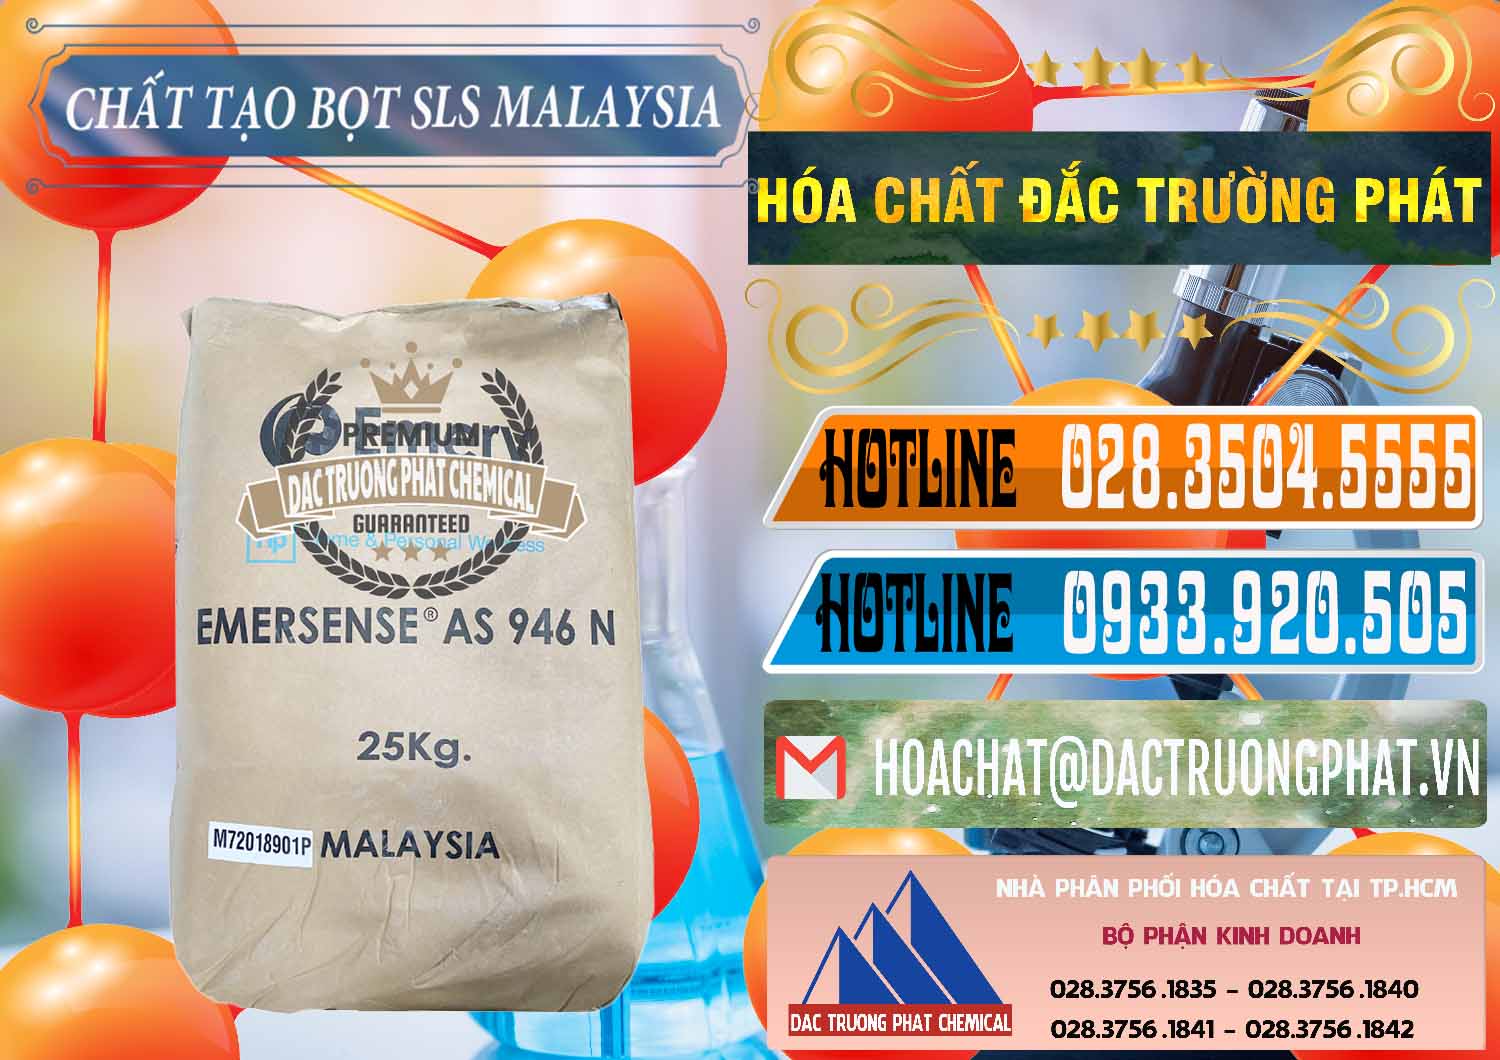 Cty kinh doanh và bán Chất Tạo Bọt SLS Emery - Emersense AS 946N Mã Lai Malaysia - 0423 - Nơi bán và phân phối hóa chất tại TP.HCM - stmp.net